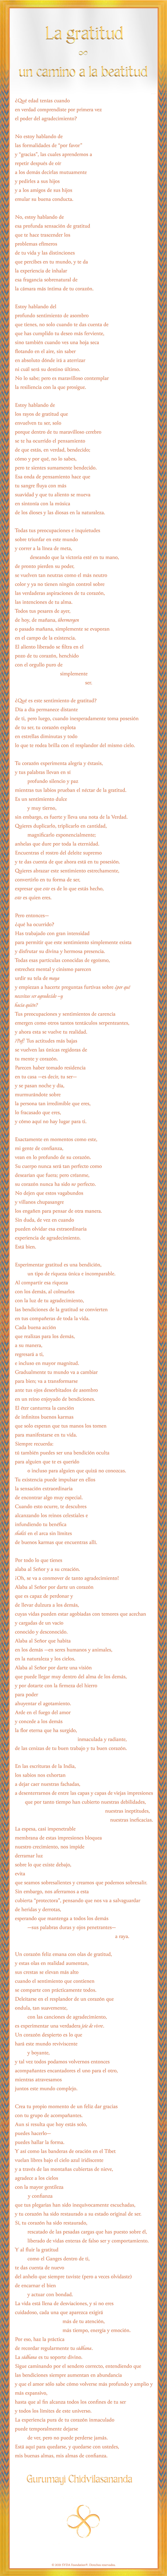 Spanish Poem